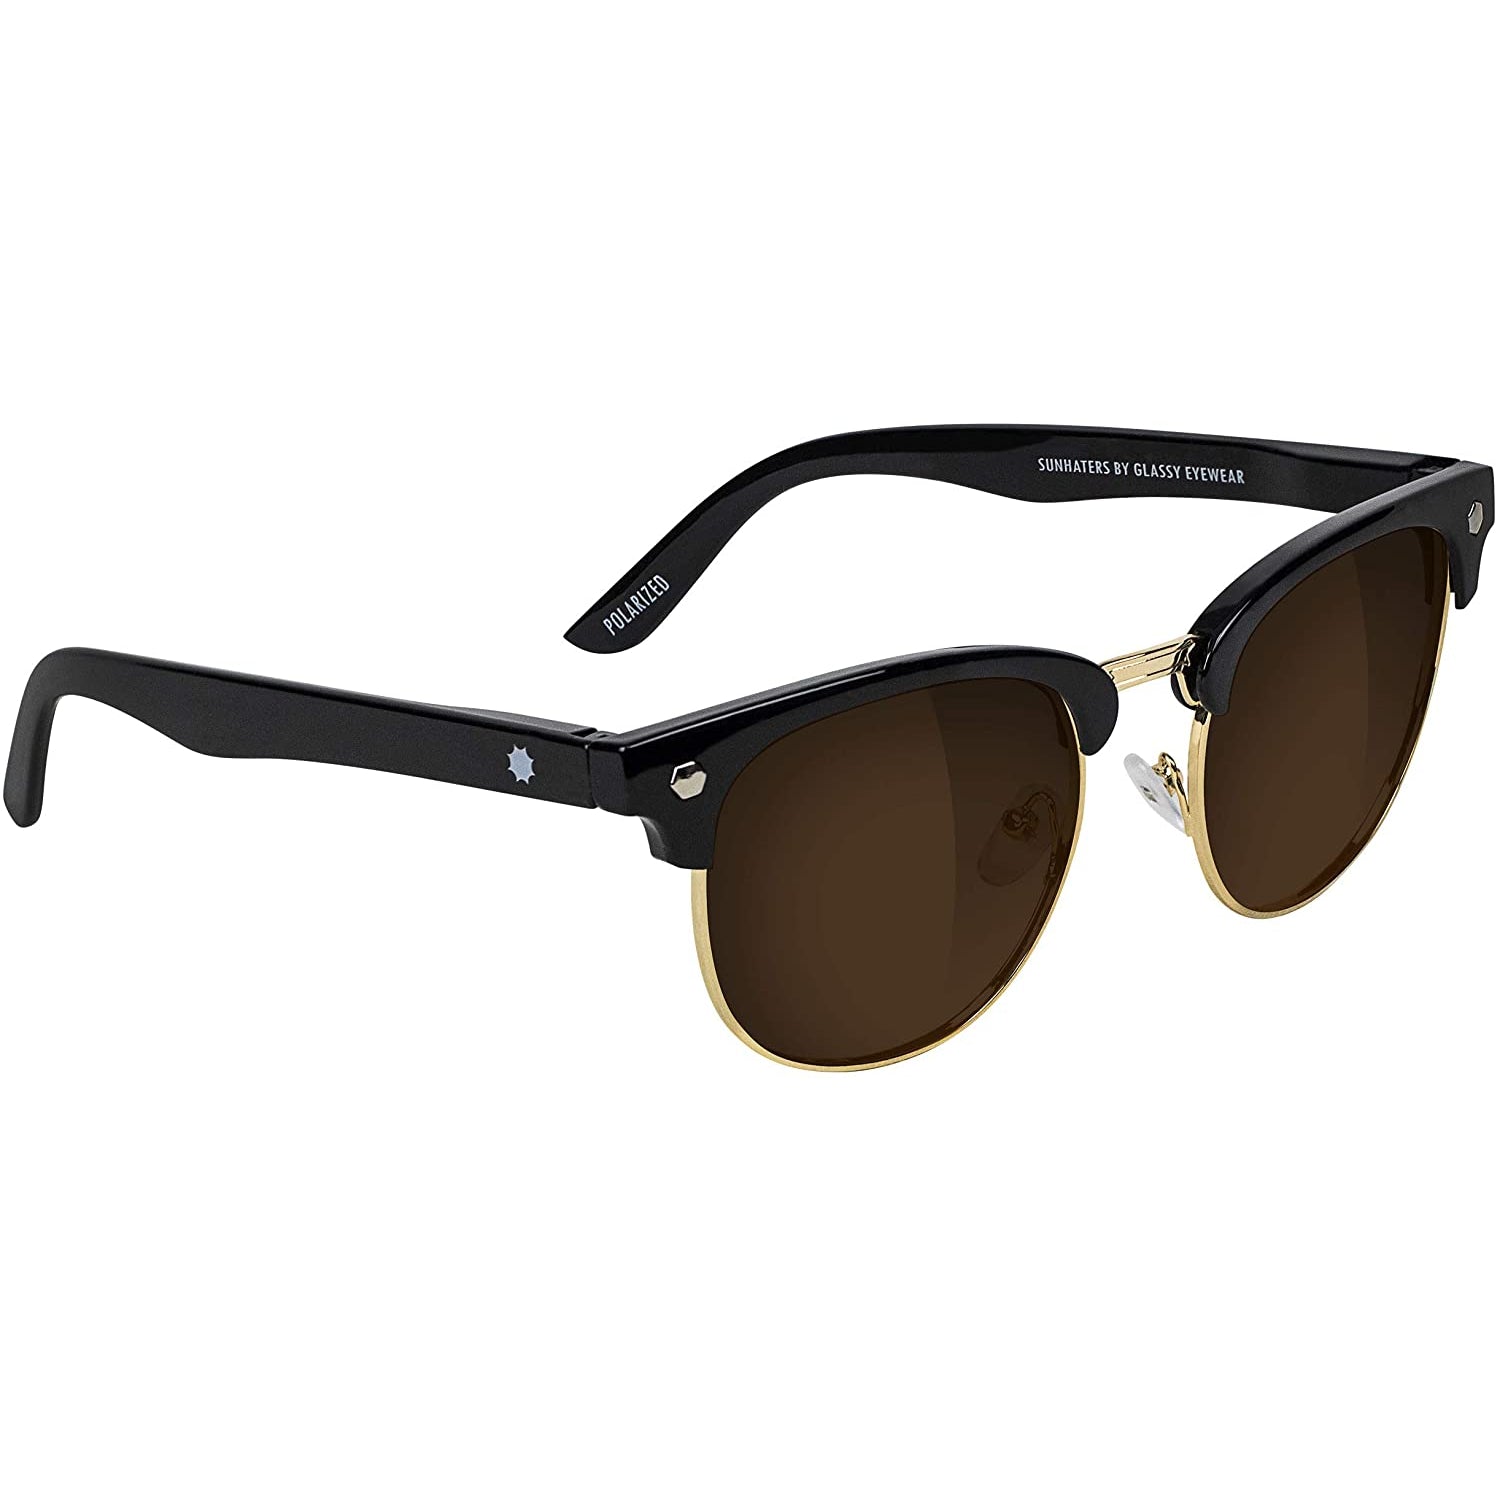 Black polarized Morrison Glassy Eyewear Sunglasses